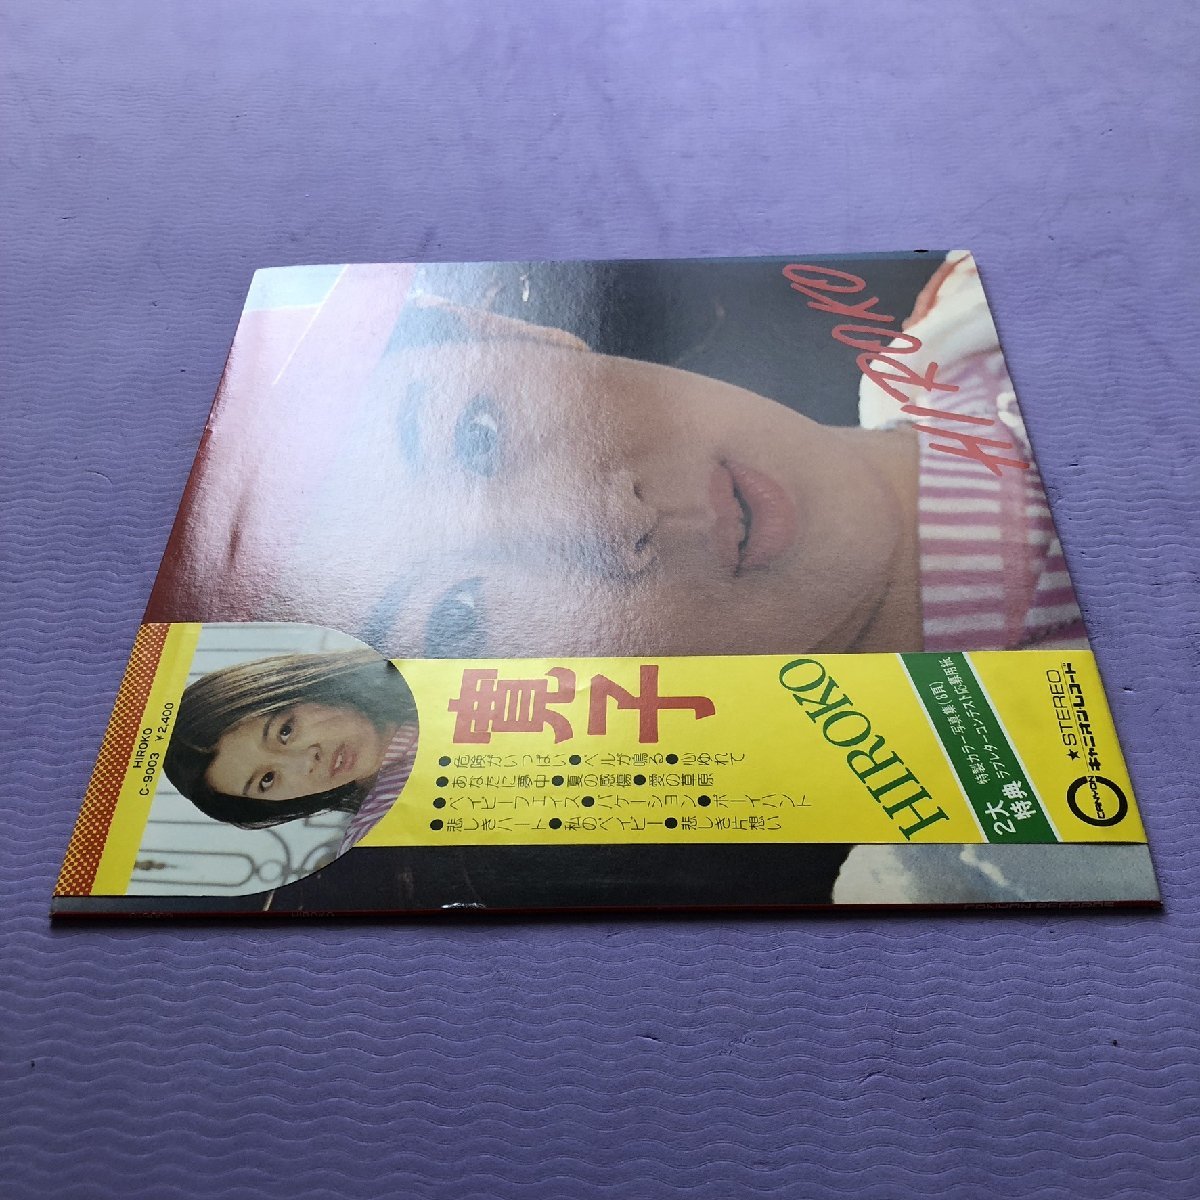 美盤 レア盤 林寛子 Hiroko Hayashi 1976年 LPレコード 寛子 Hiroko 国内盤 オリジナルリリース盤 帯付 8p写真ブックレット付 J-Pop_画像3